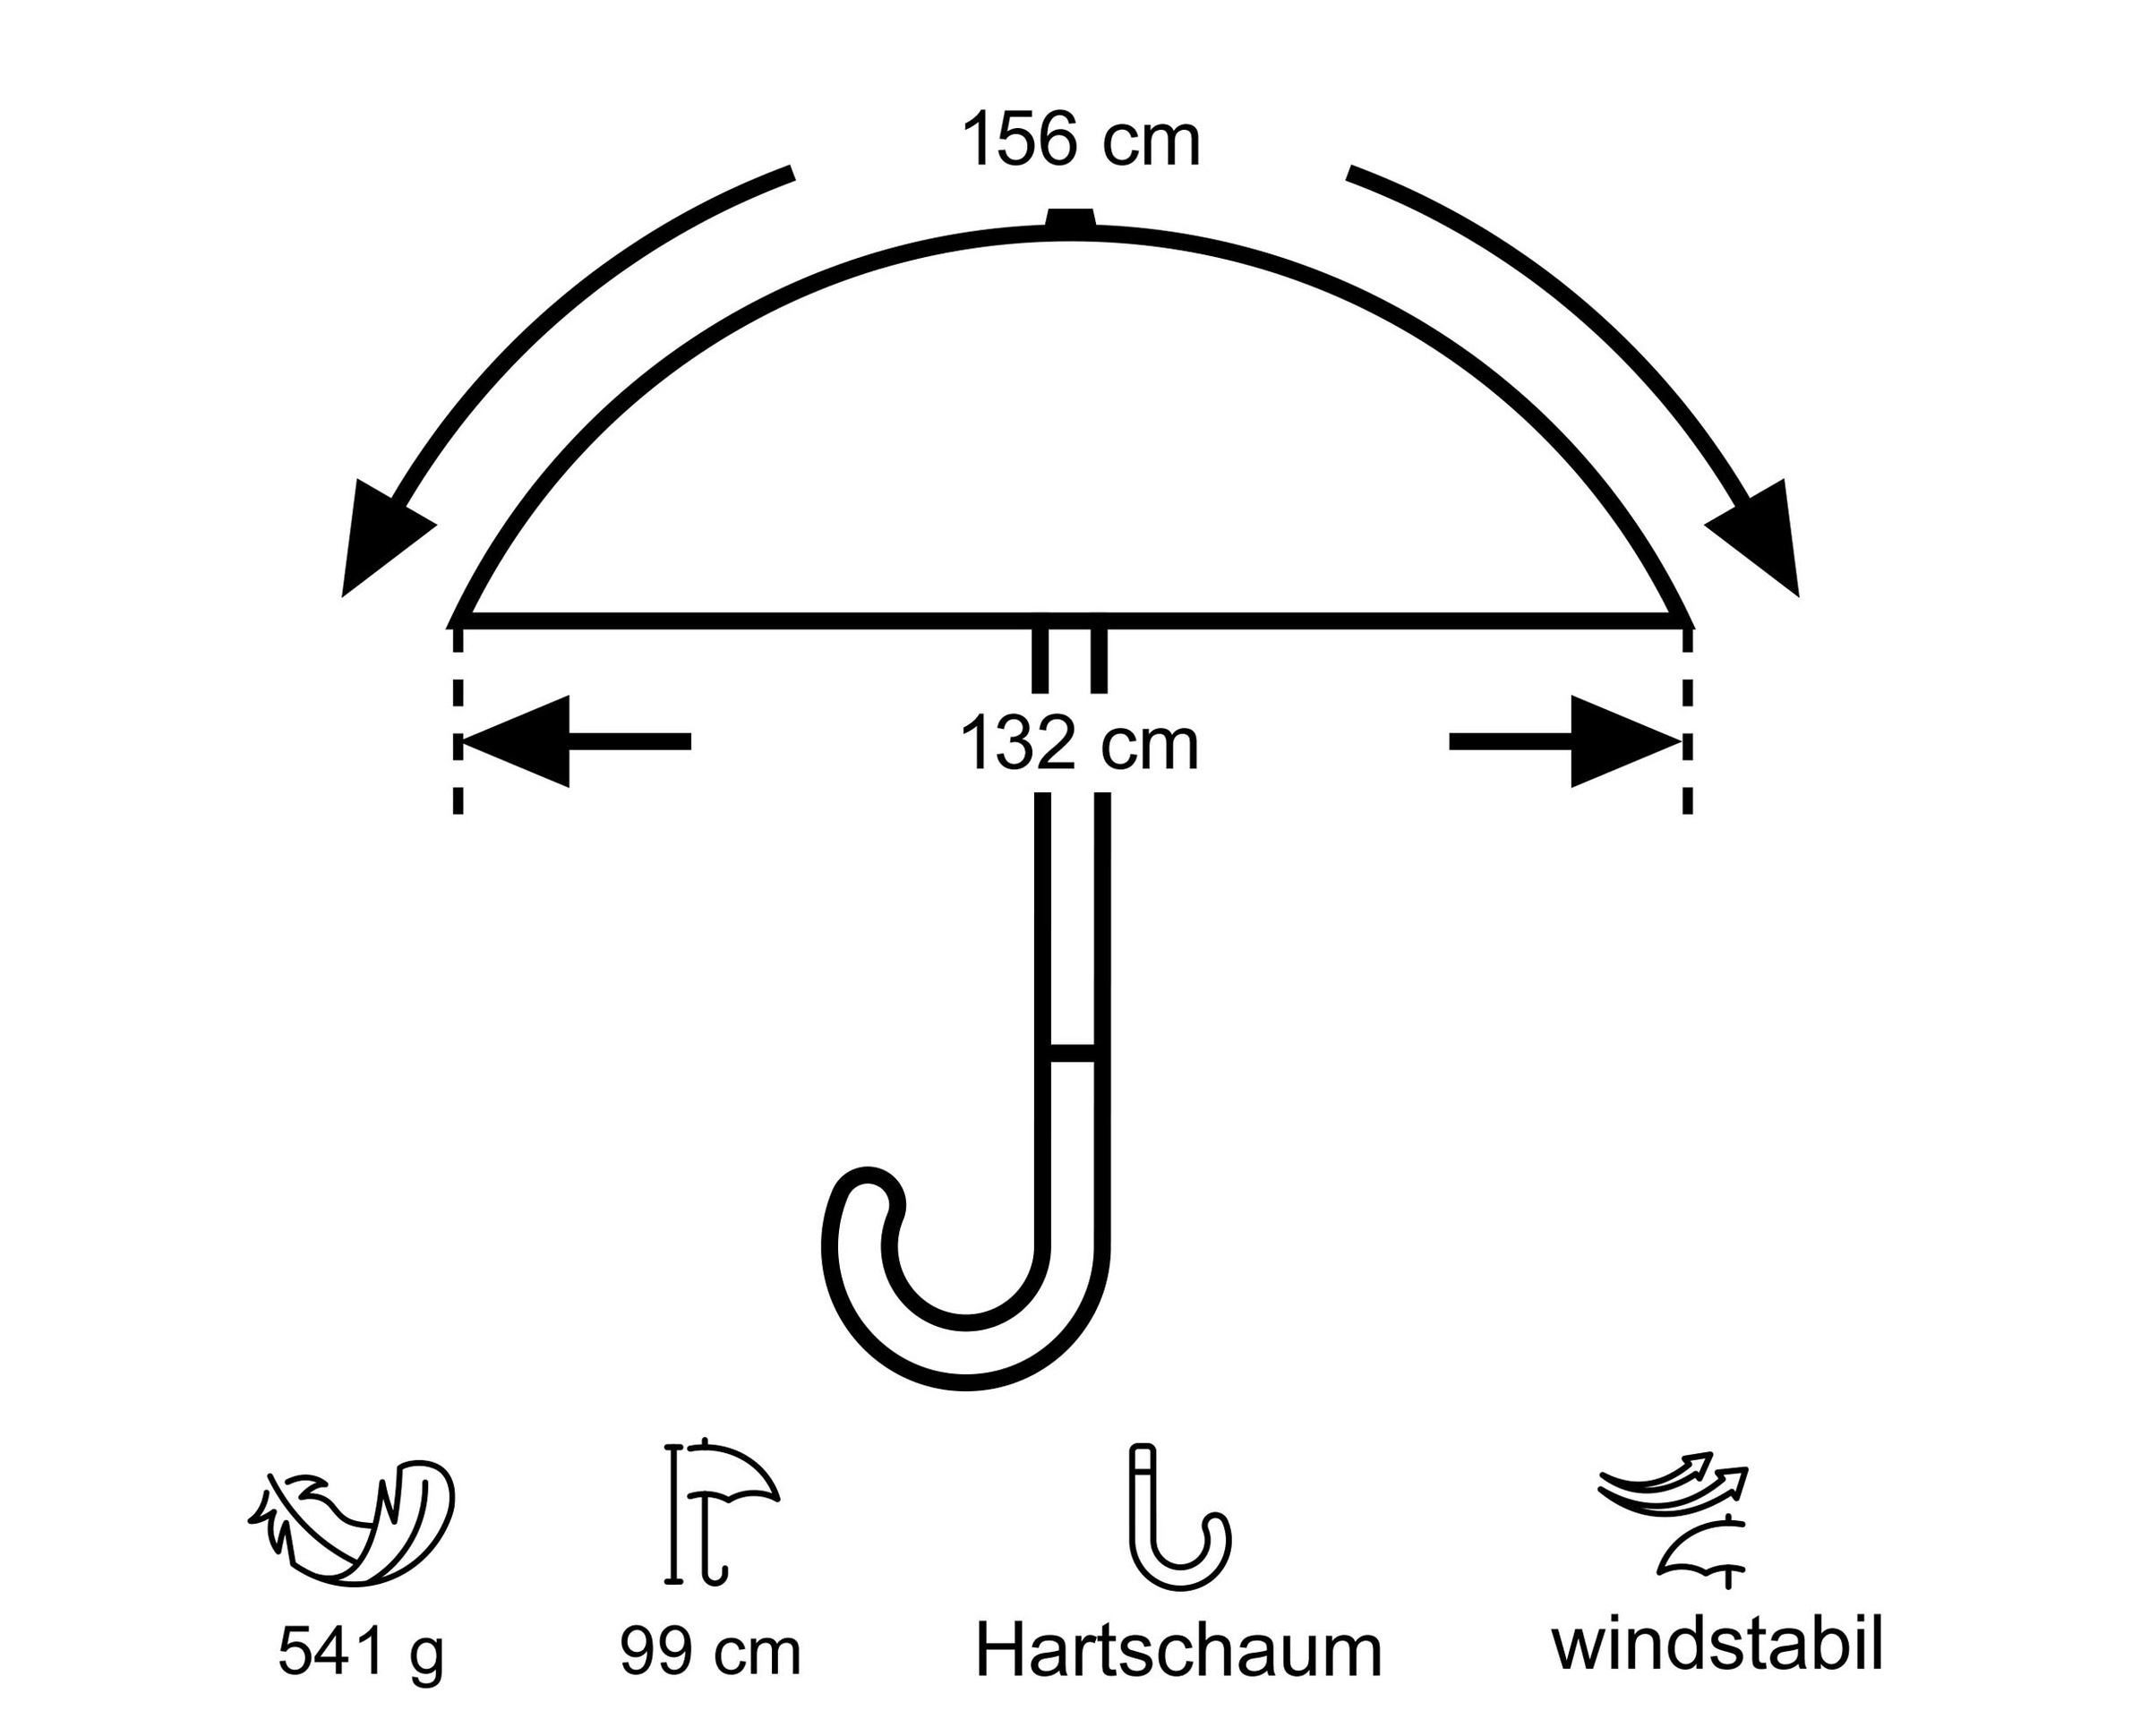 EuroSCHIRM® Partnerschirm »birdiepal® compact«, Regenschirm für Zwei, mit extra großem Dach